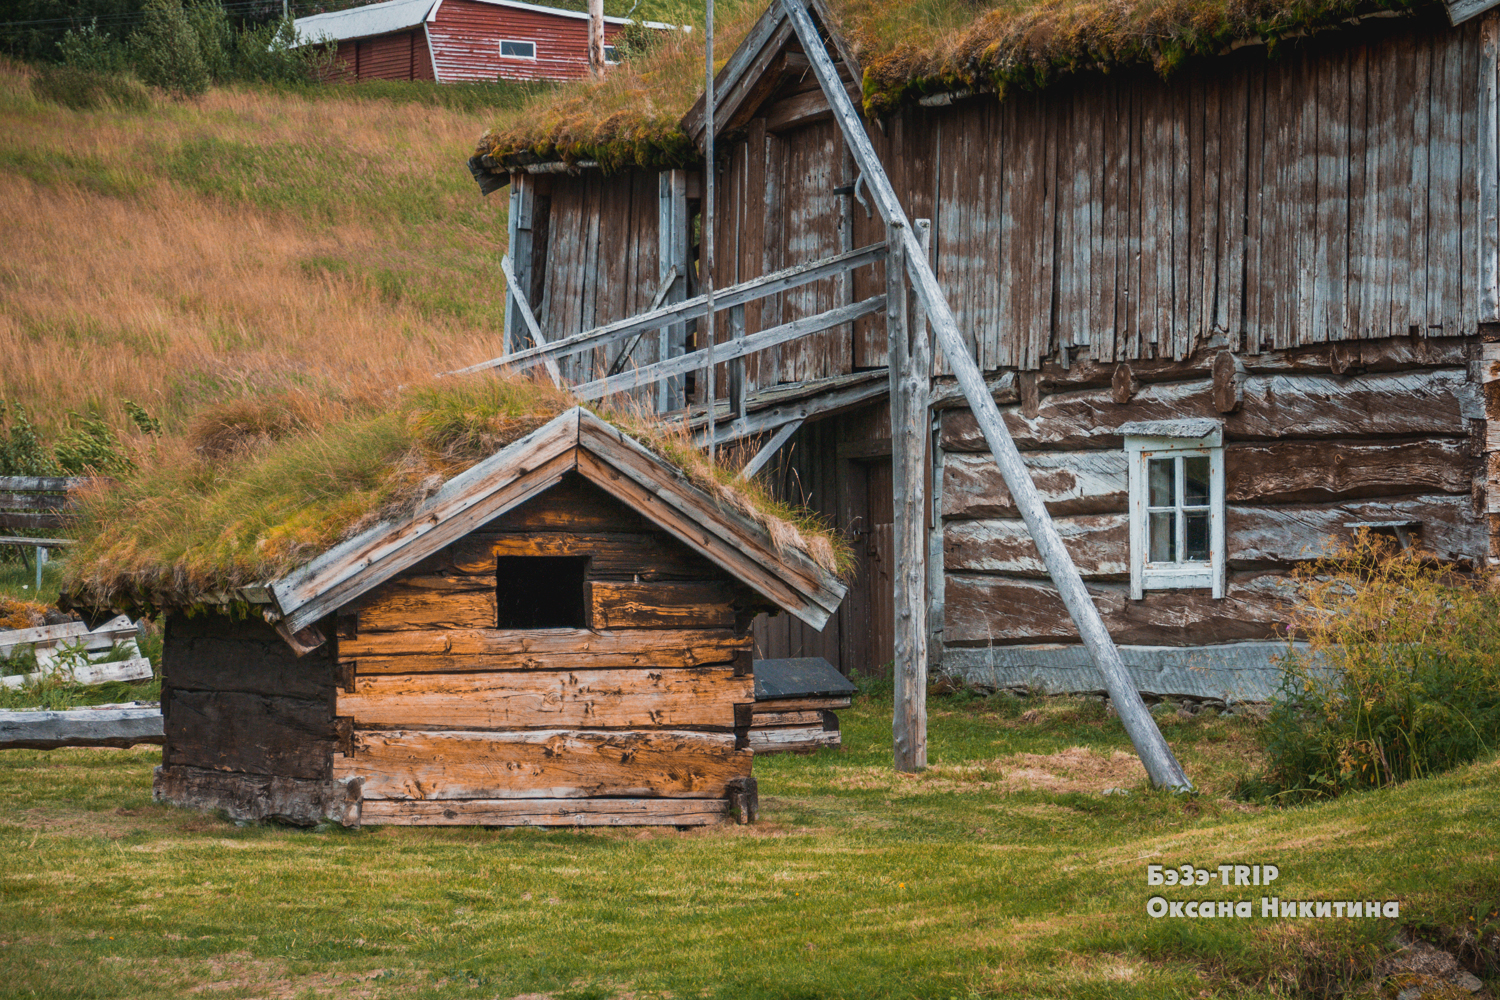 Овцы, которые пасутся на крыше дома. Зачем норвежцам трава на кровле и как над ними поэтому шутят соседи?:)5